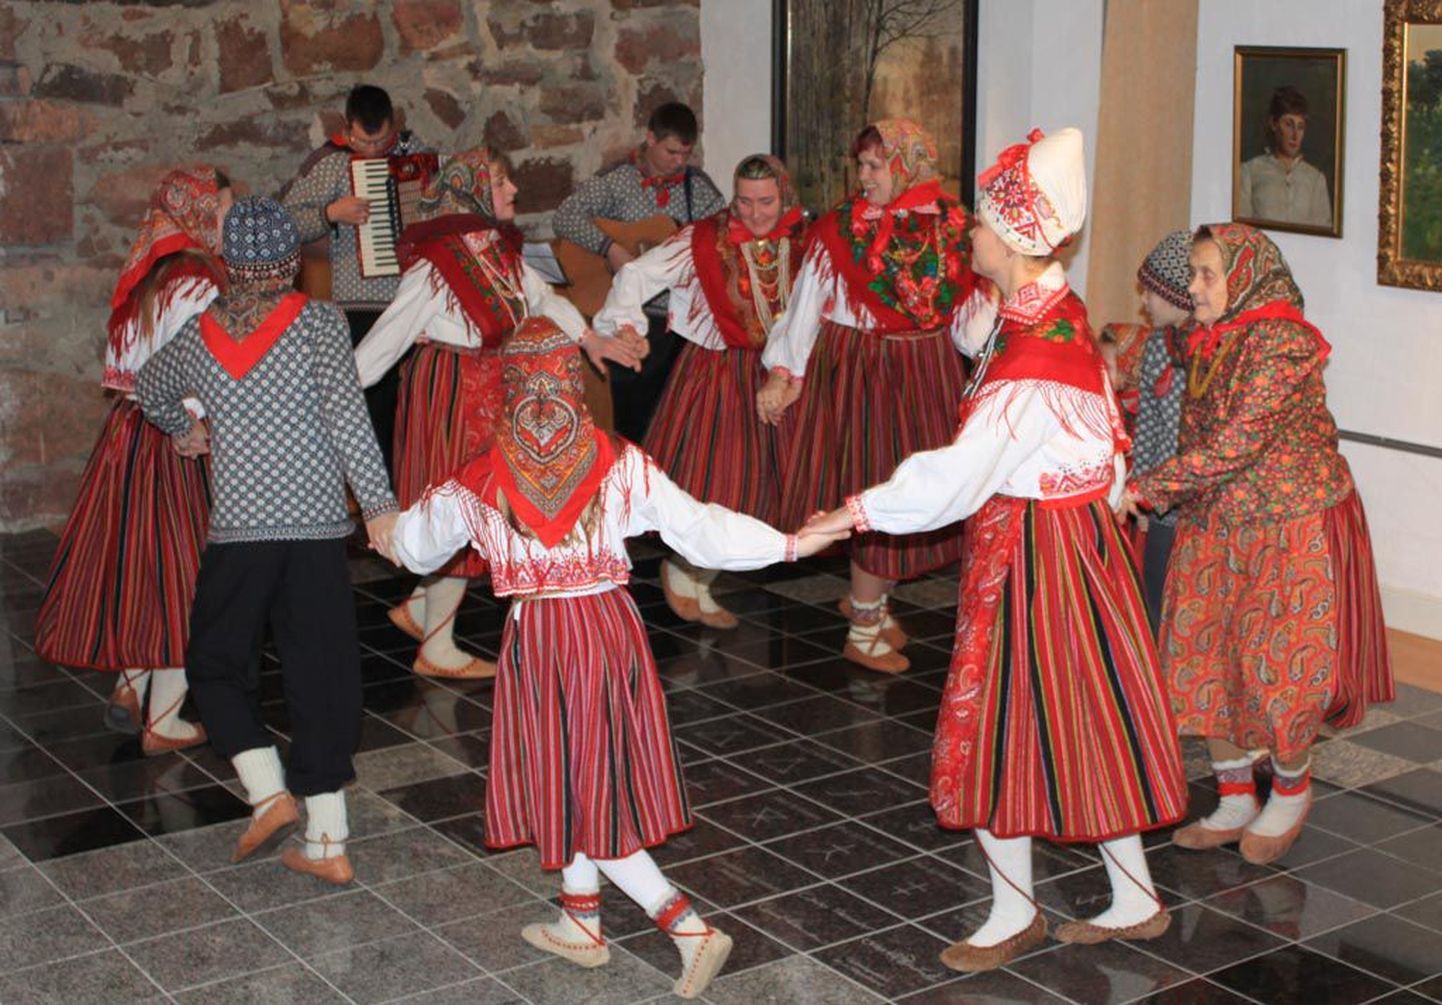 Önningeby kunstimuuseumis avasid kihnlased lauludes-tantsides oma pärimuskultuuri varasalve.